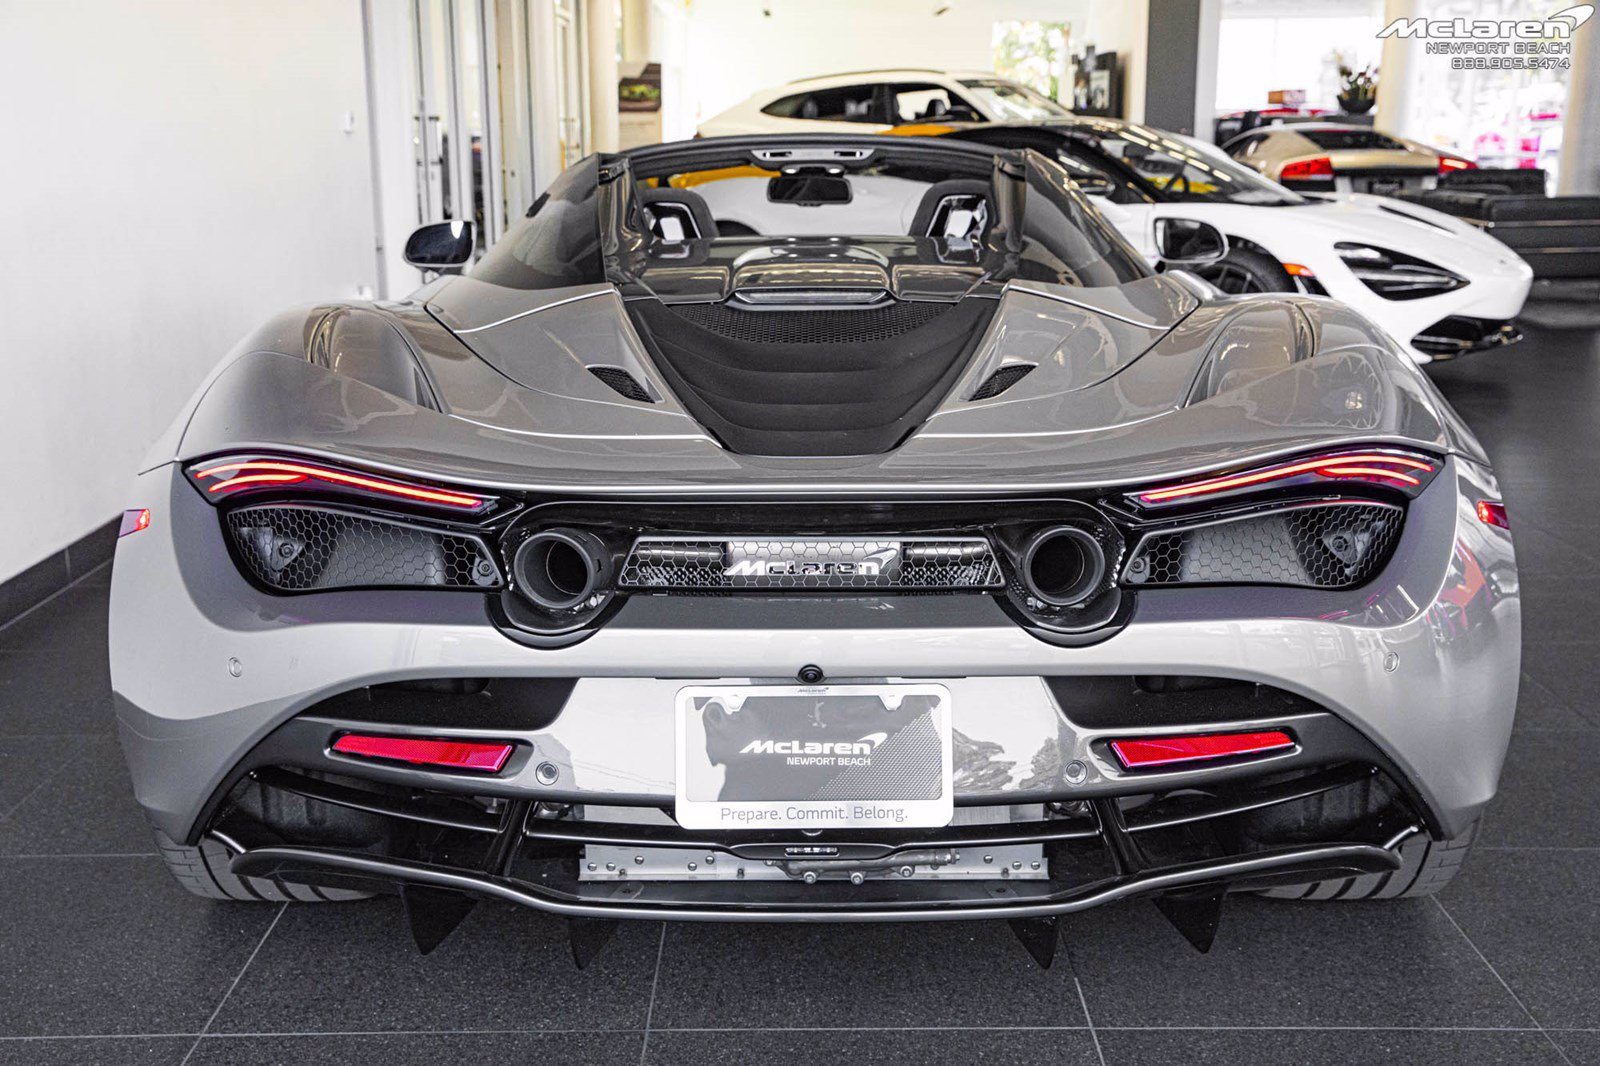 McLaren Automotive - Prepare, Commit, Belong